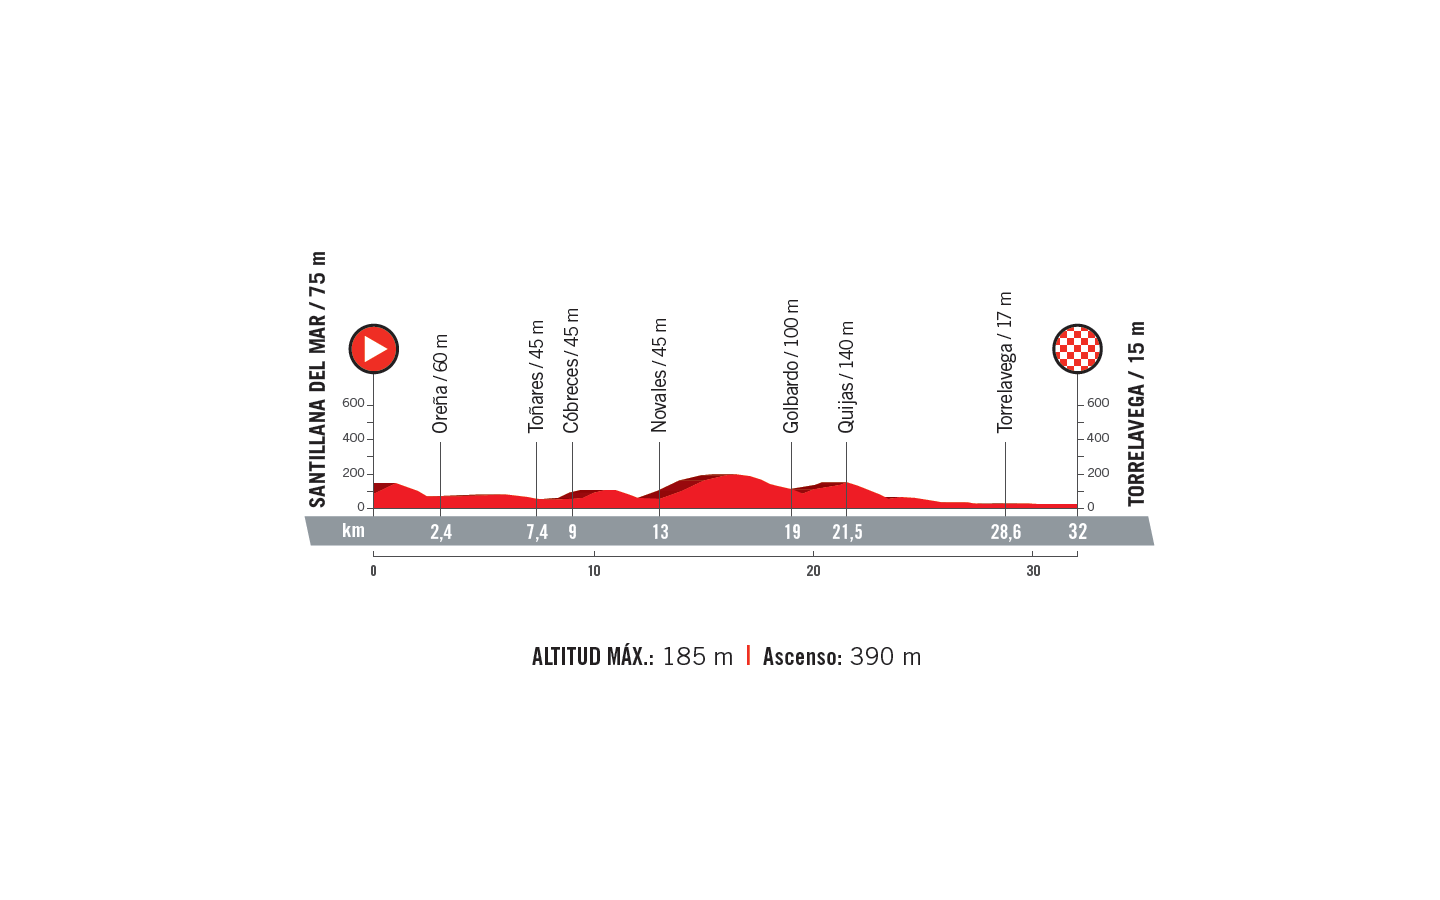 profil 16. etapu Vuelta a Espana 2018